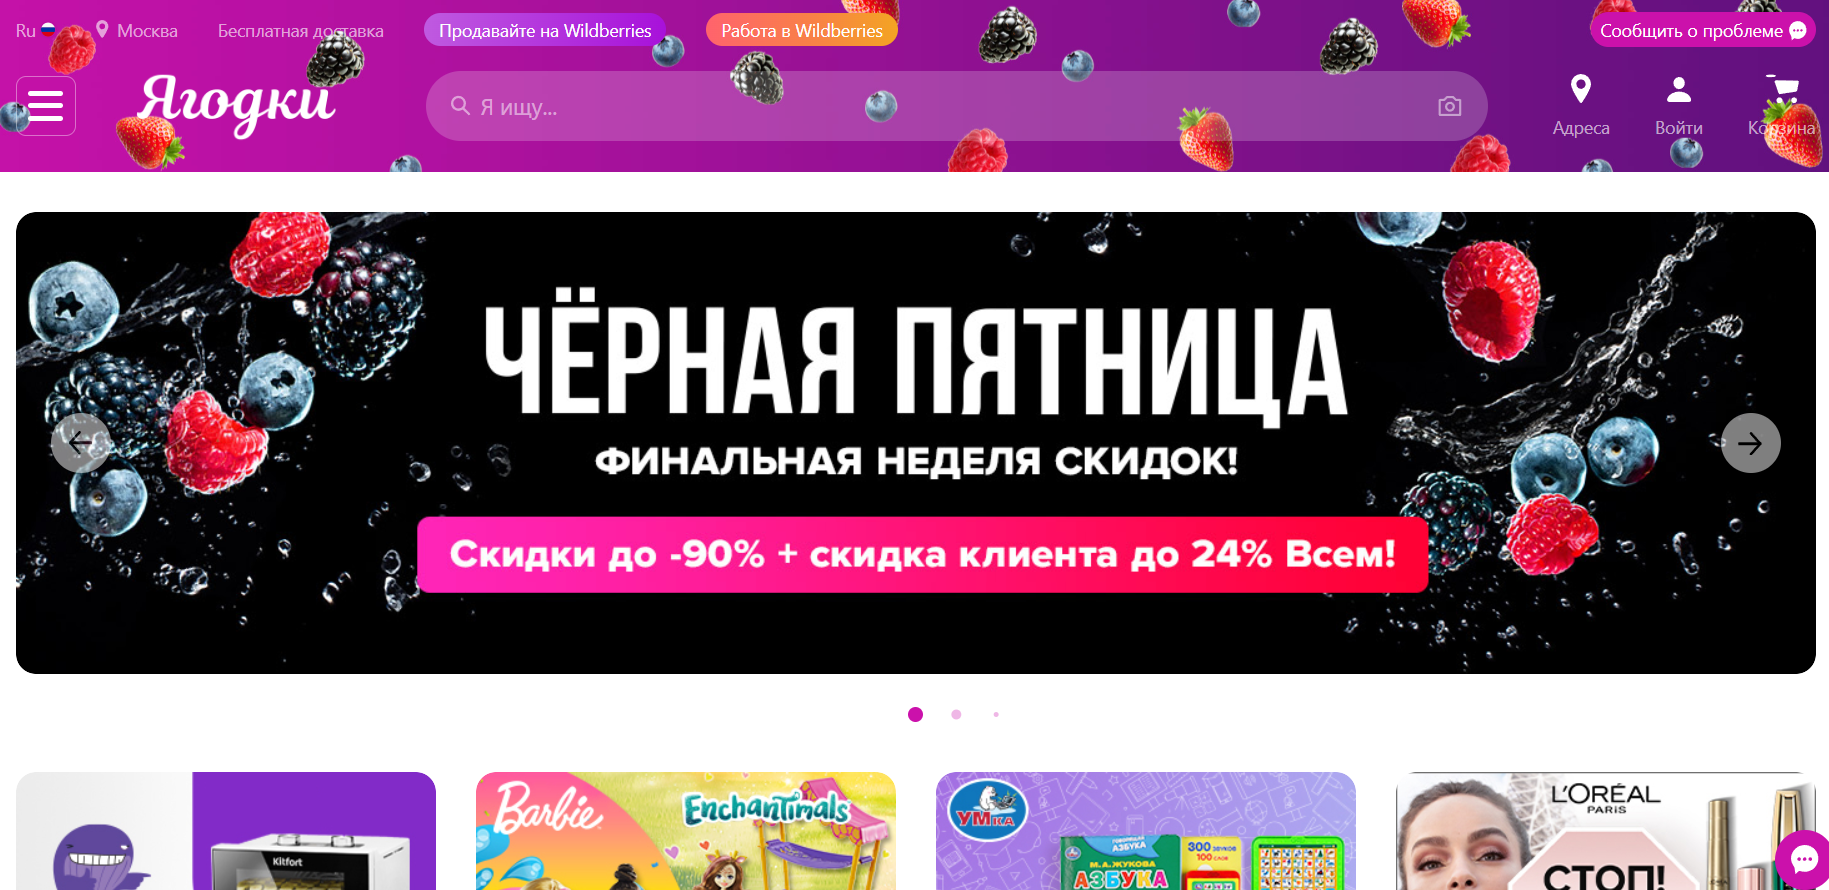 Wildberries сменил название своего сайта на русскоязычное «Ягодки»